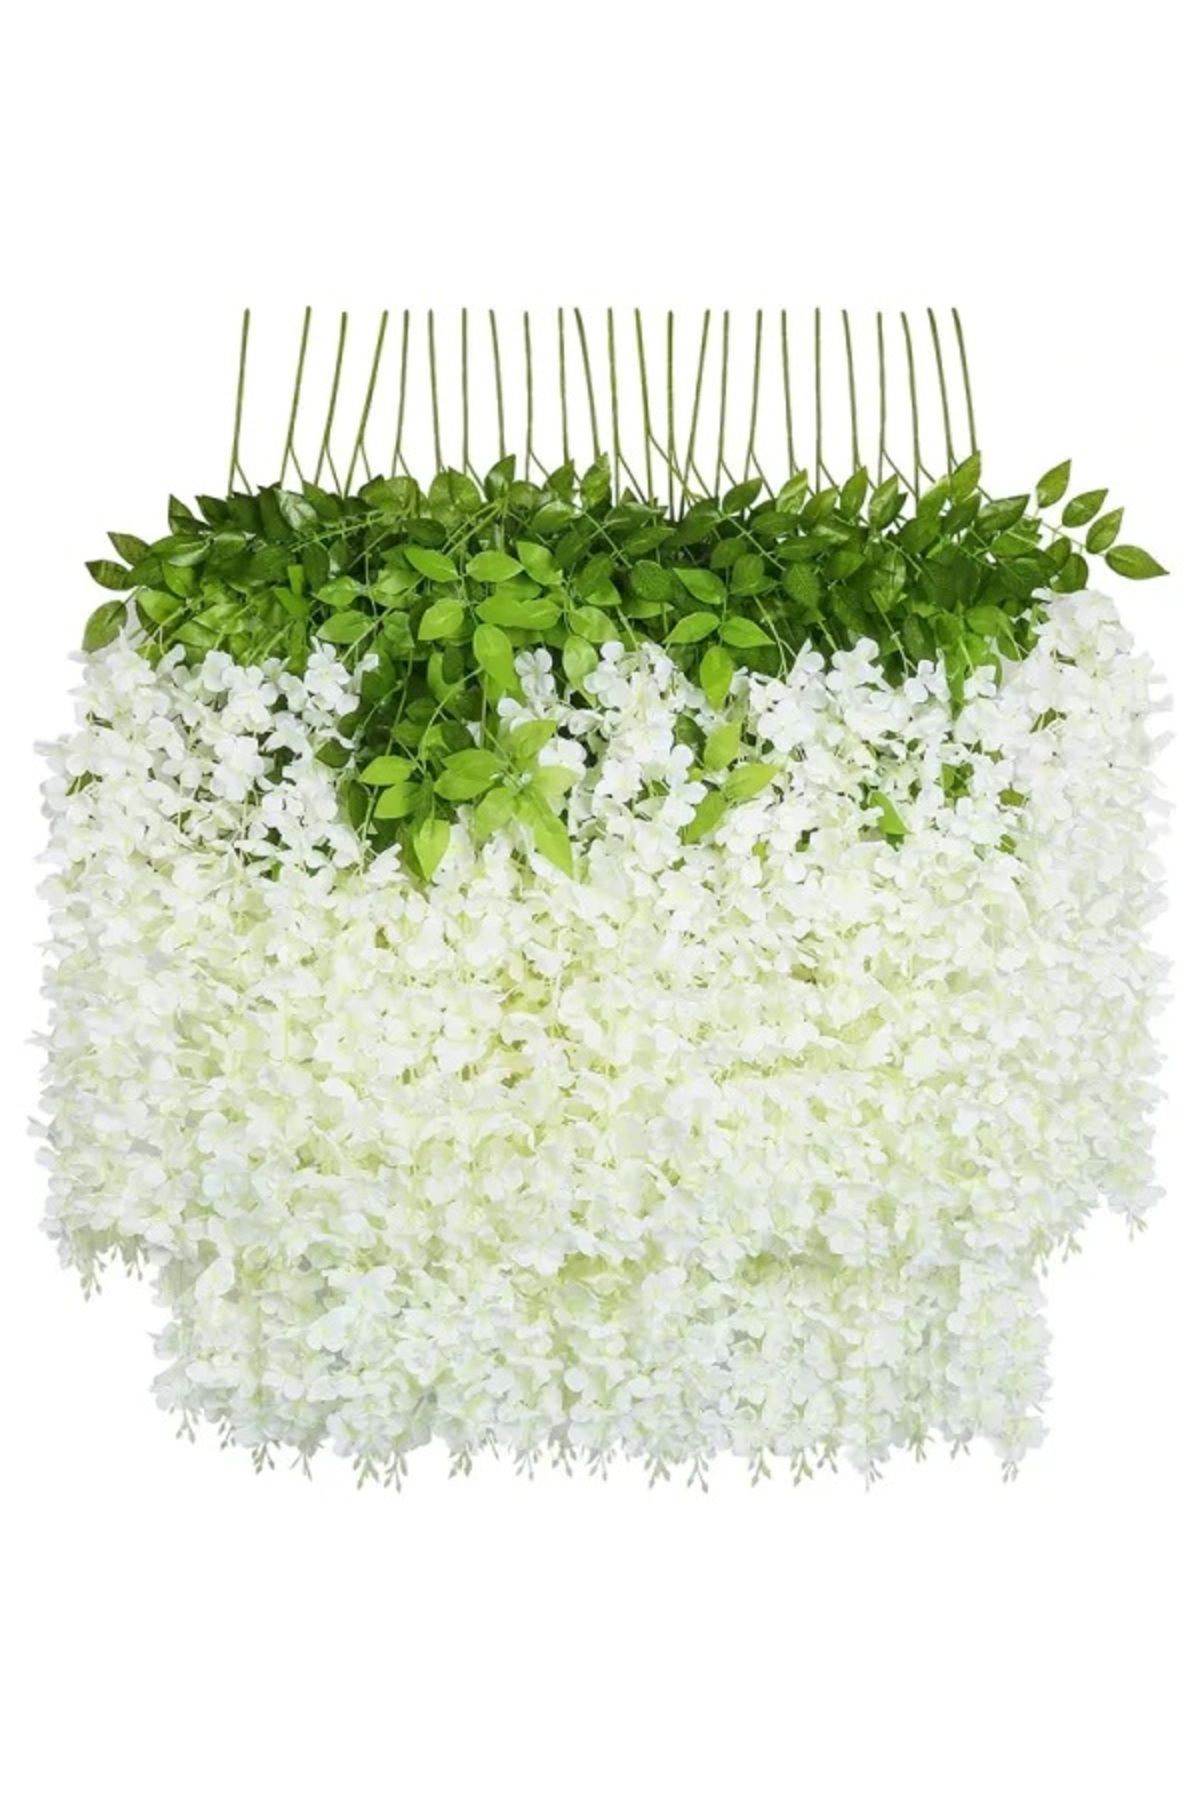 NAHAMİS Dekoratif Yapay Bitki Sarkan Akasya Çiçeği 100 Cm Beyaz 12 Li Paket